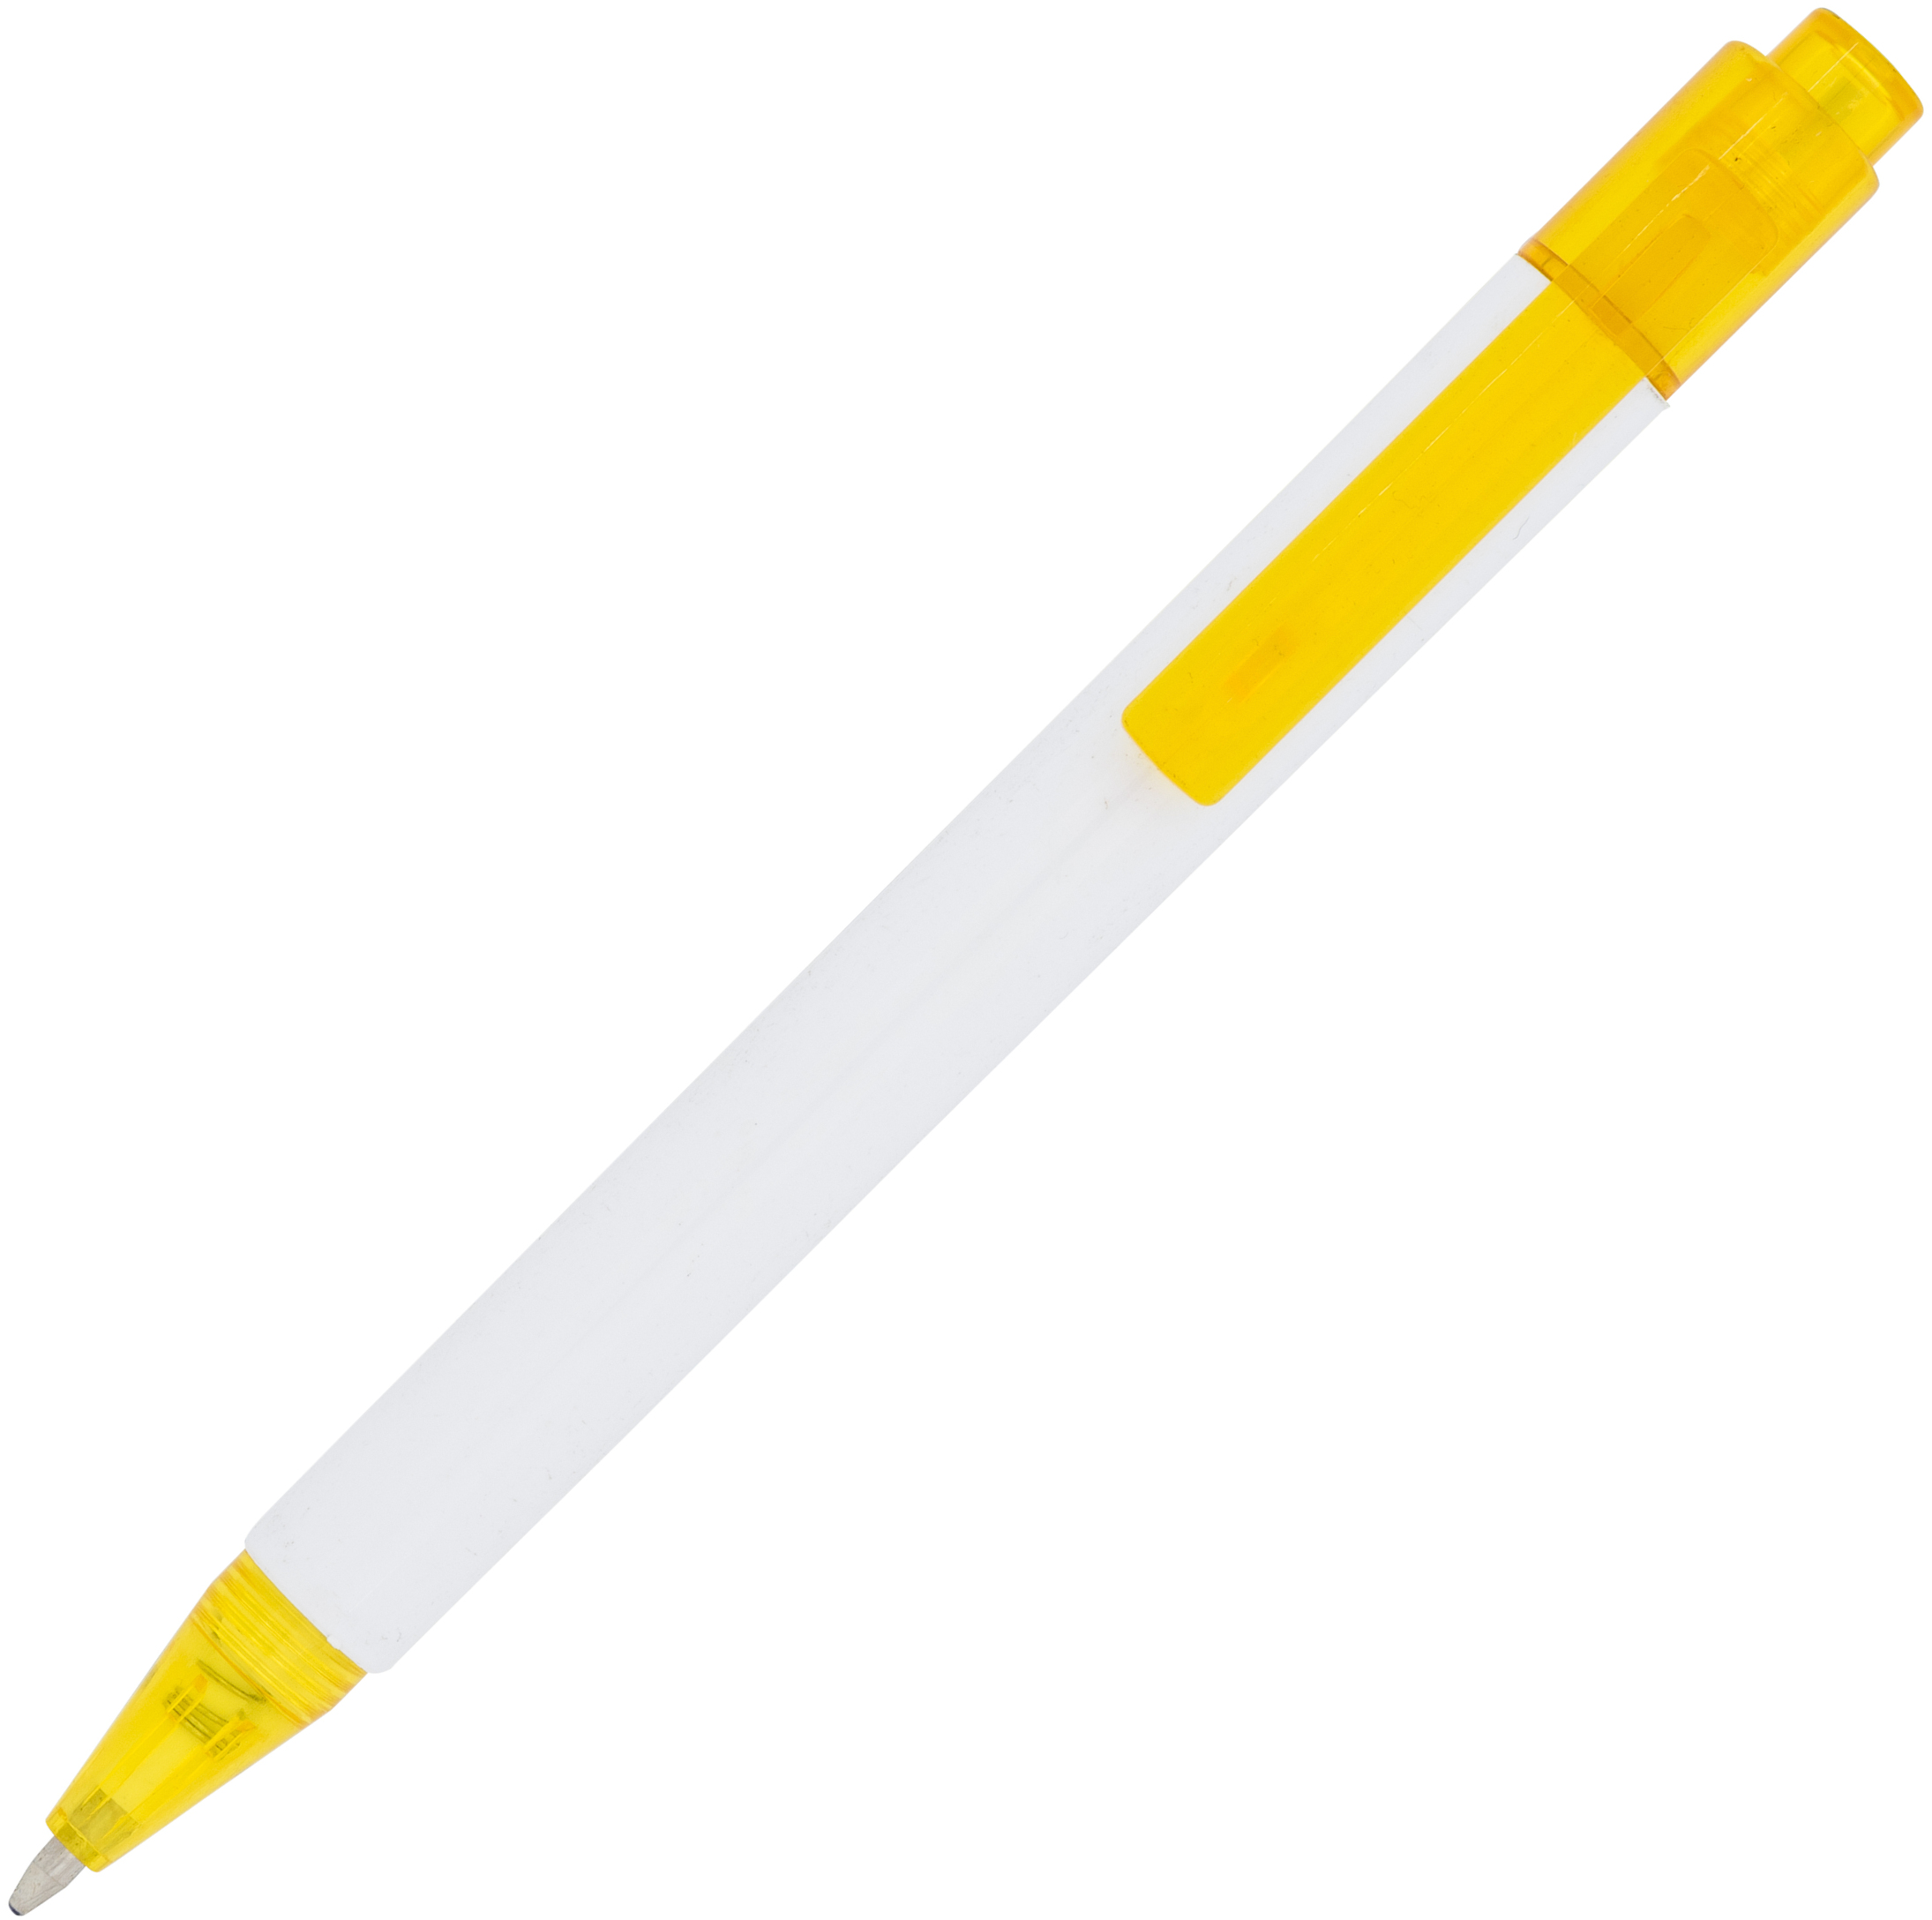 Calypso ballpoint pen